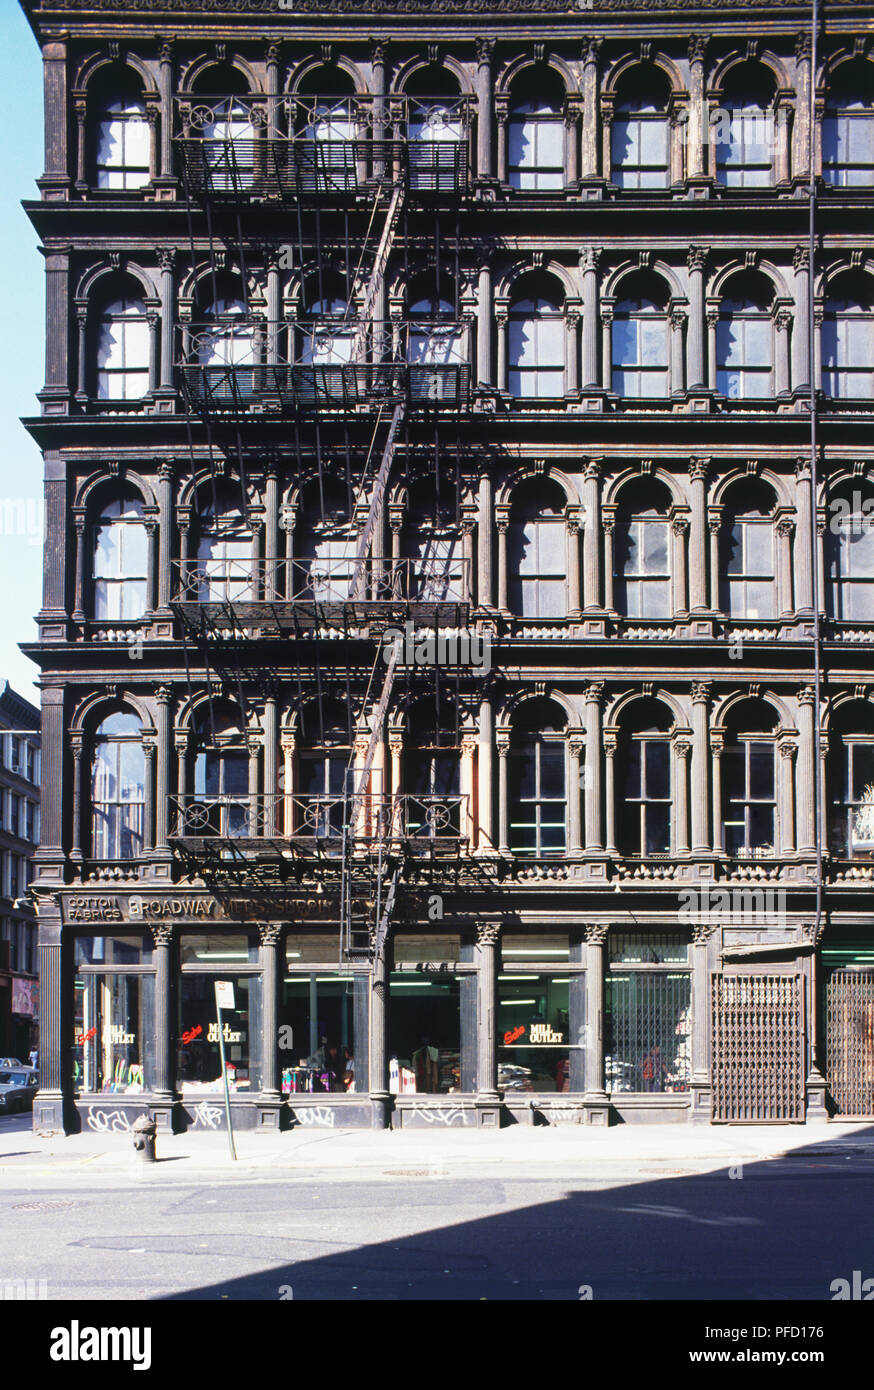 Stati Uniti d'America, New York, quattro piani di edificio ad angolo con scala esterna, finestre incorniciate da colonne ornamentali, negozio di tessuti al piano terra. Foto Stock